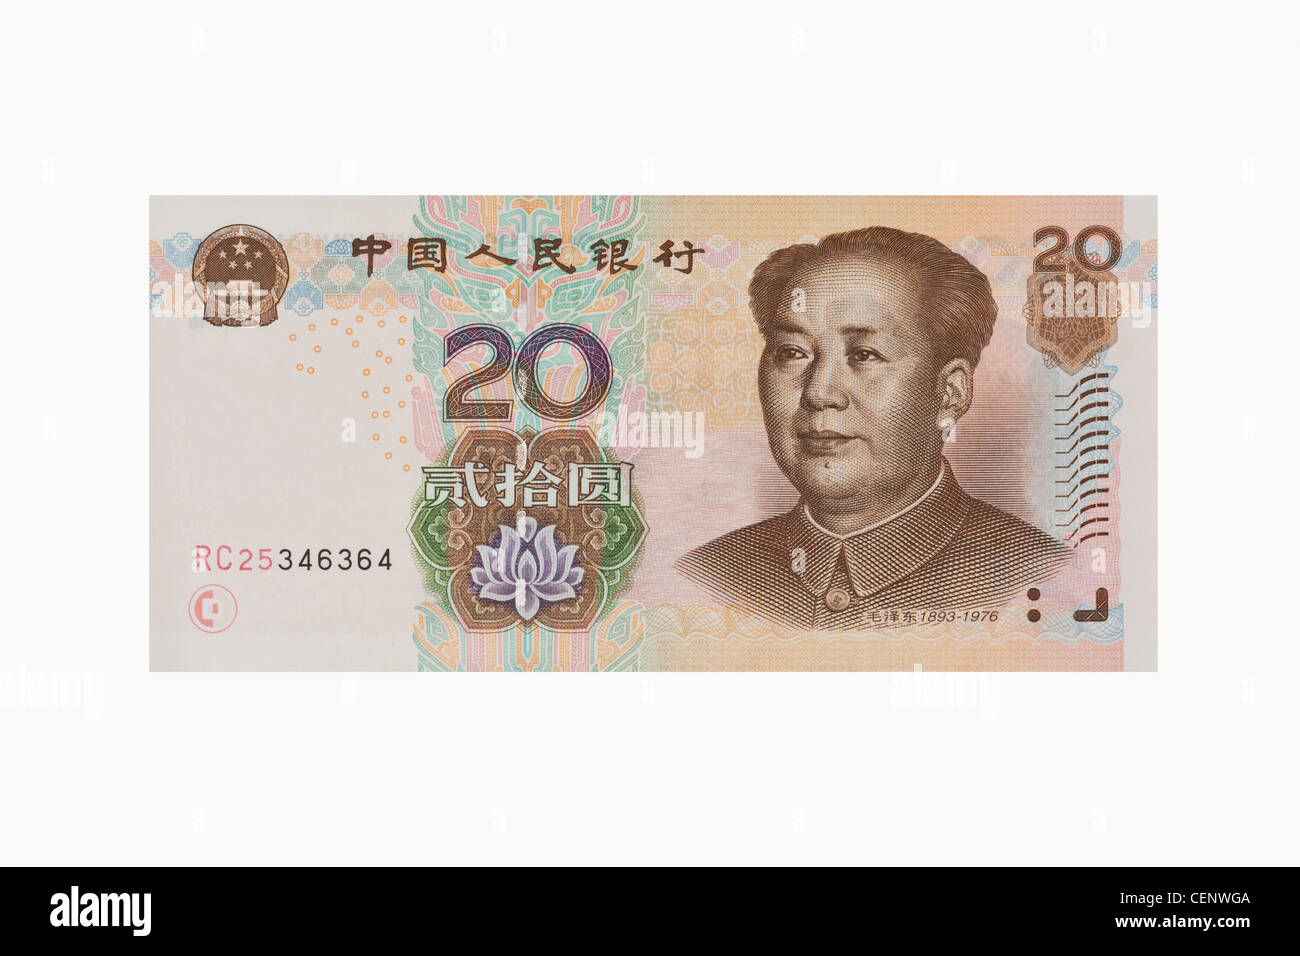 20 yuan bill con il ritratto di Mao Zedong. Il renminbi, la valuta cinese, è stato introdotto nel 1949. Foto Stock